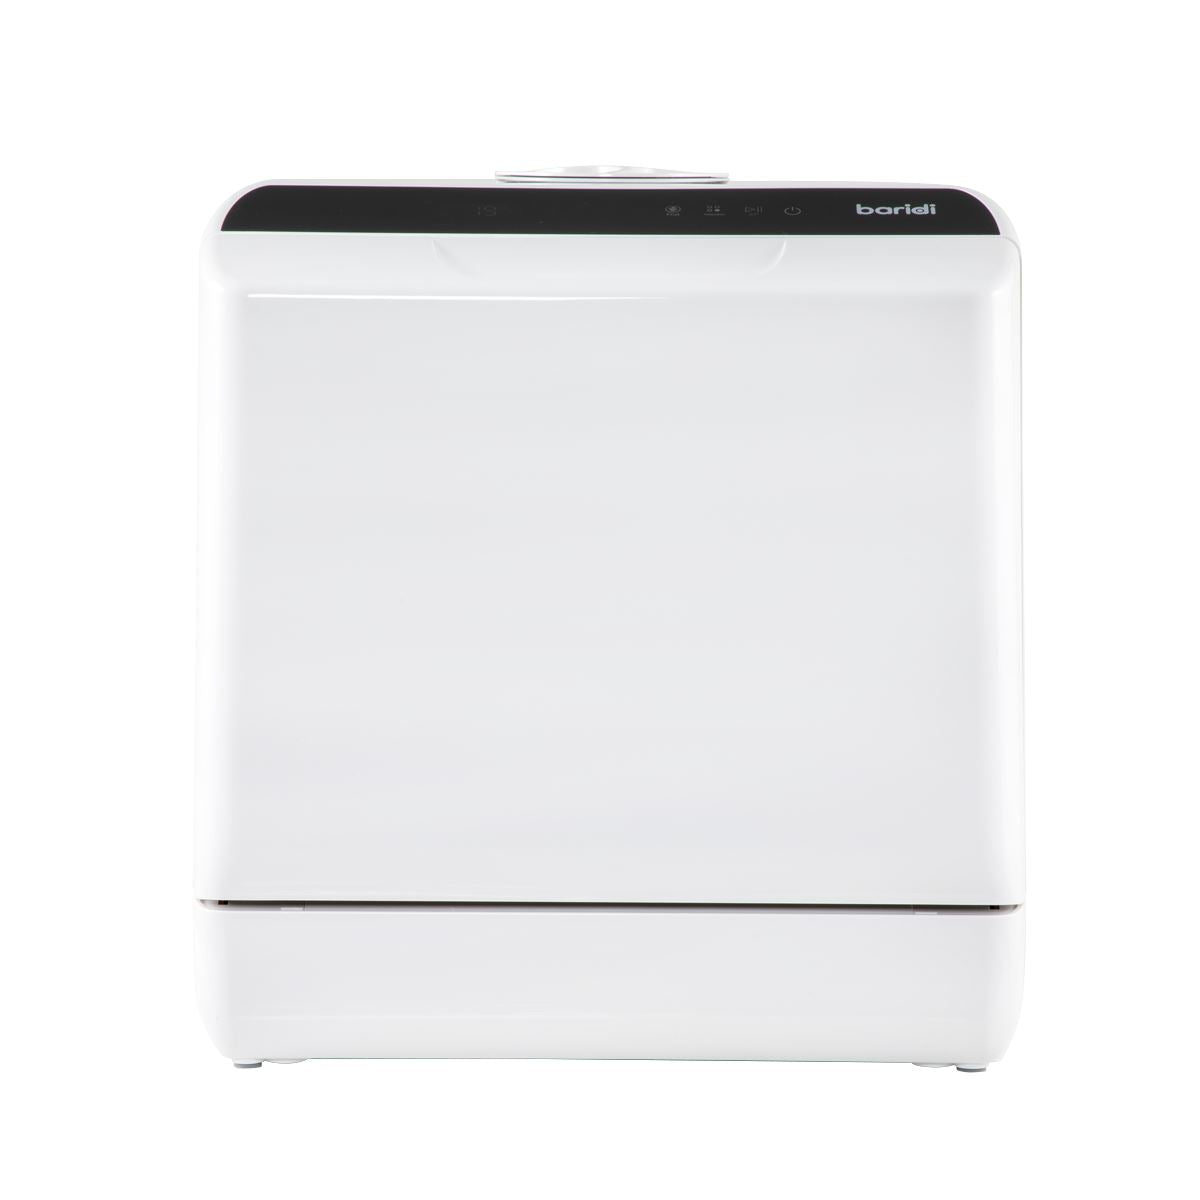 Baridi 2-4 Place Settings Mini Portable Tabletop Dishwasher, 5 Wash Functions